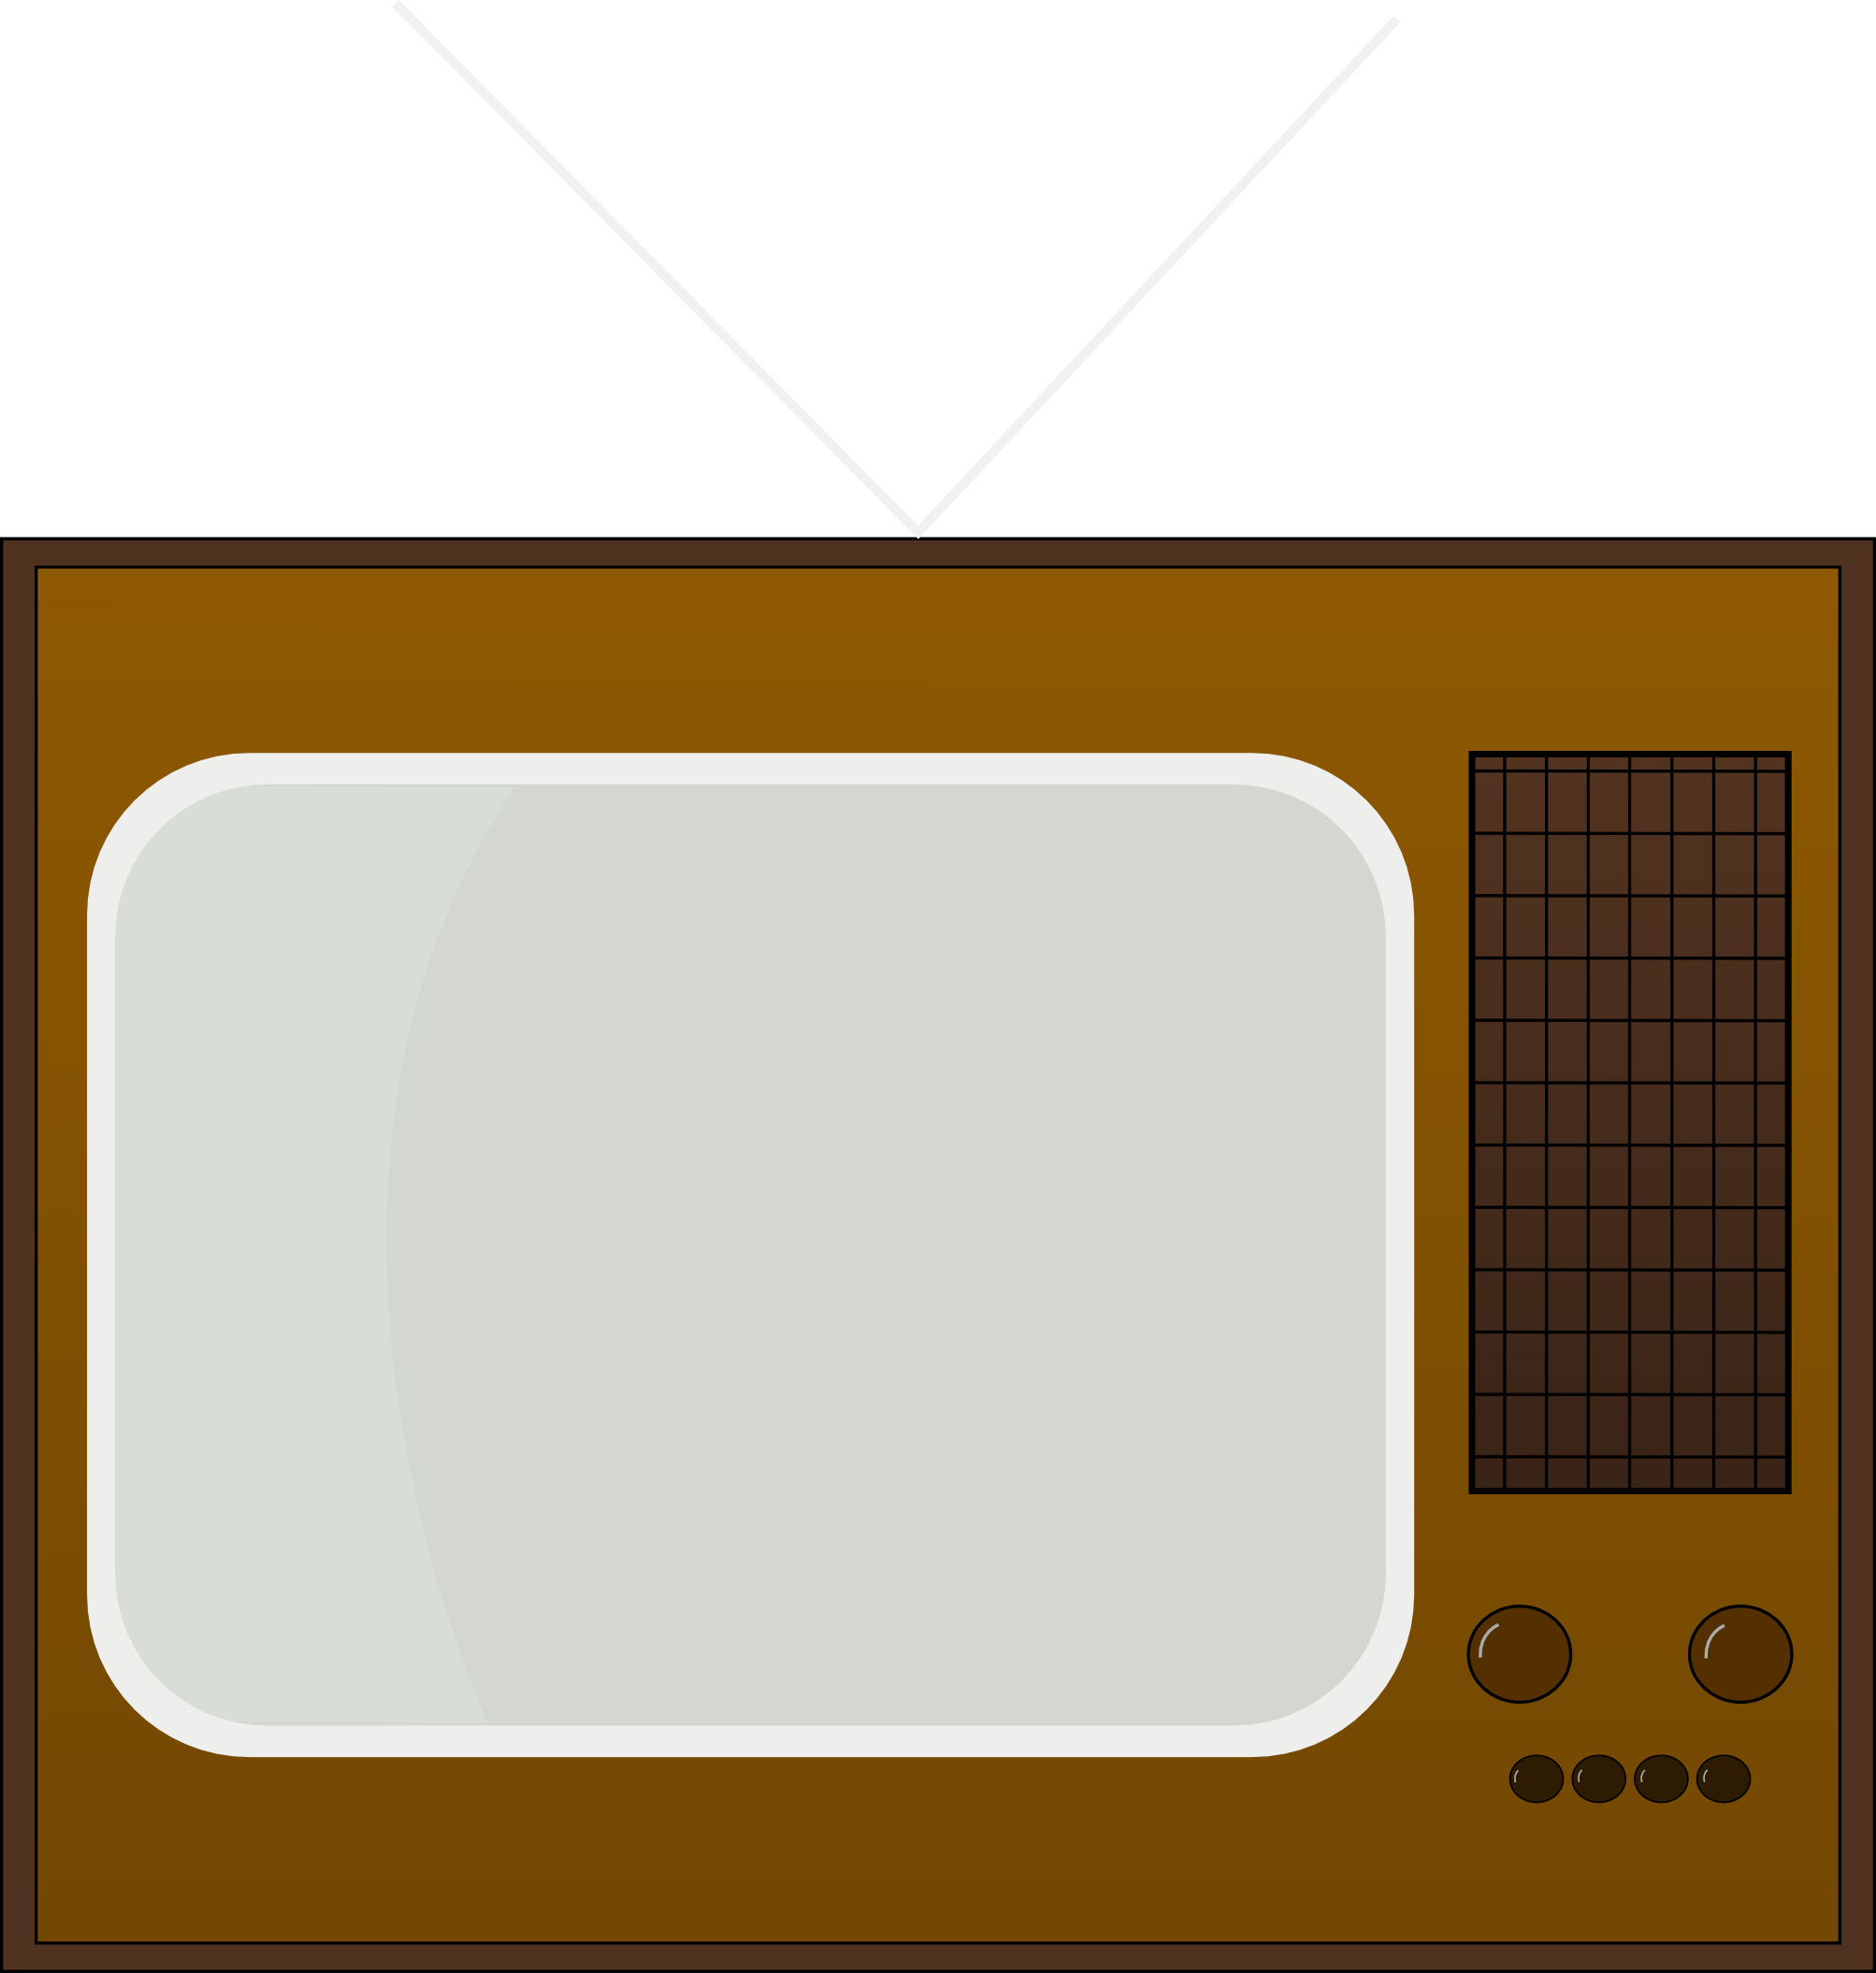 television clipart retro